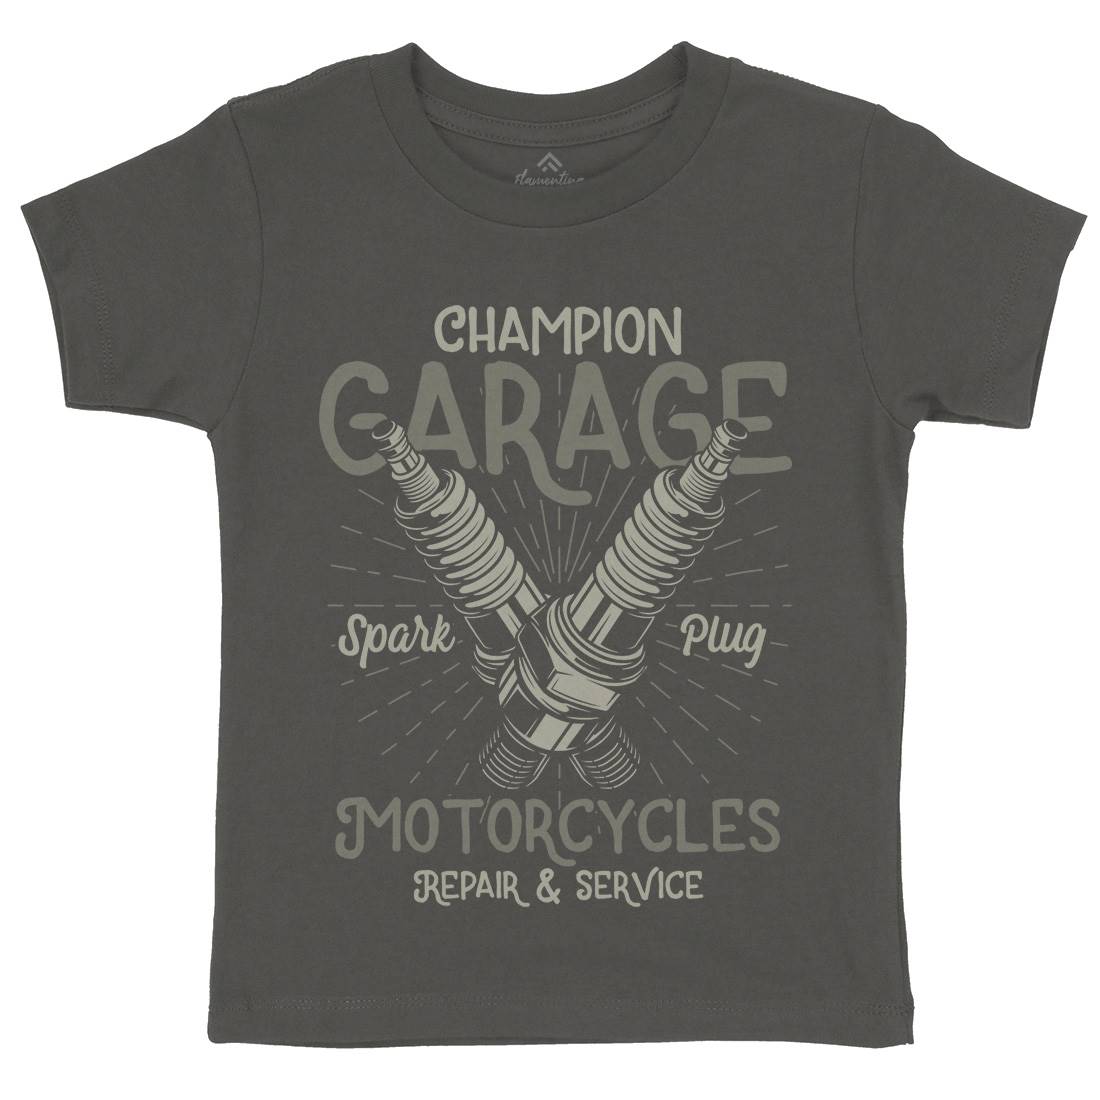 Champion Garage Kids Organic Crew Neck T-Shirt Motorcycles B835